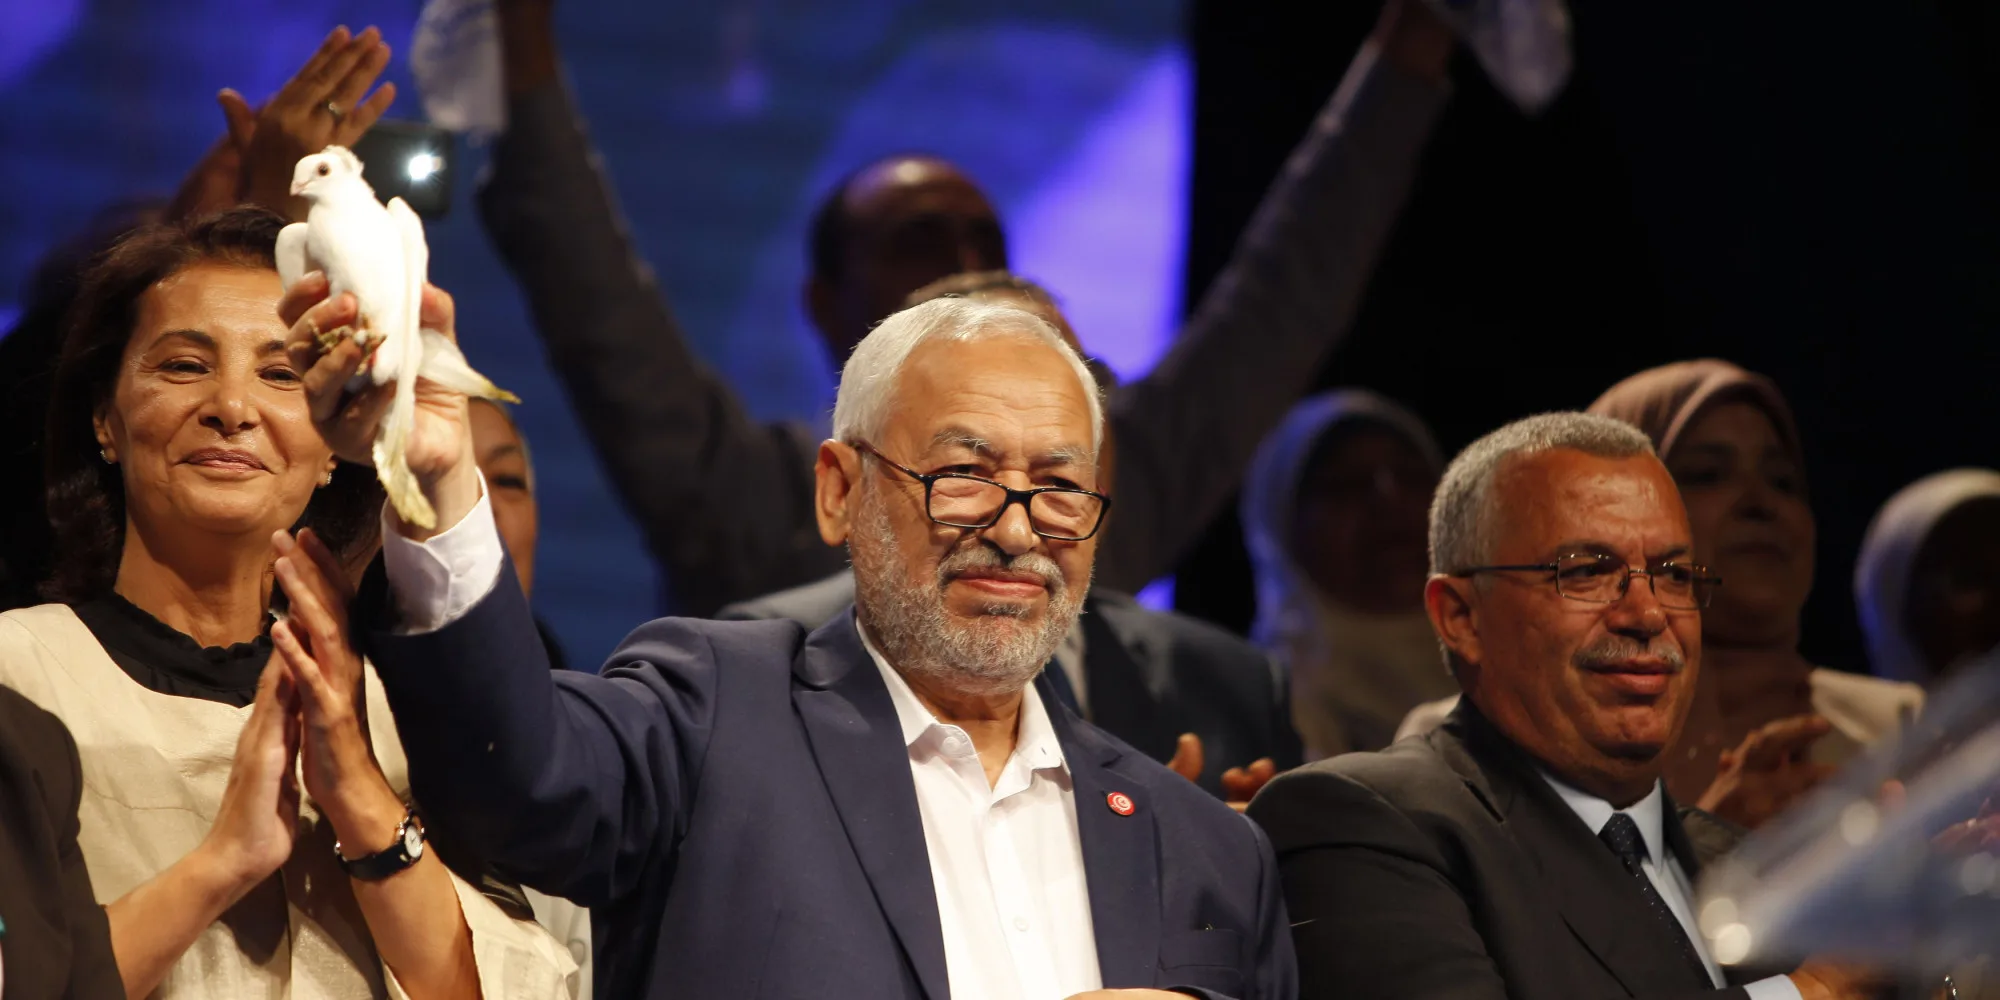 malgre-la-fracture-sociale-rached-ghannouchi-affirme-croire-en-la-reussite-de-la-transition-democratique-en-tunisie-2